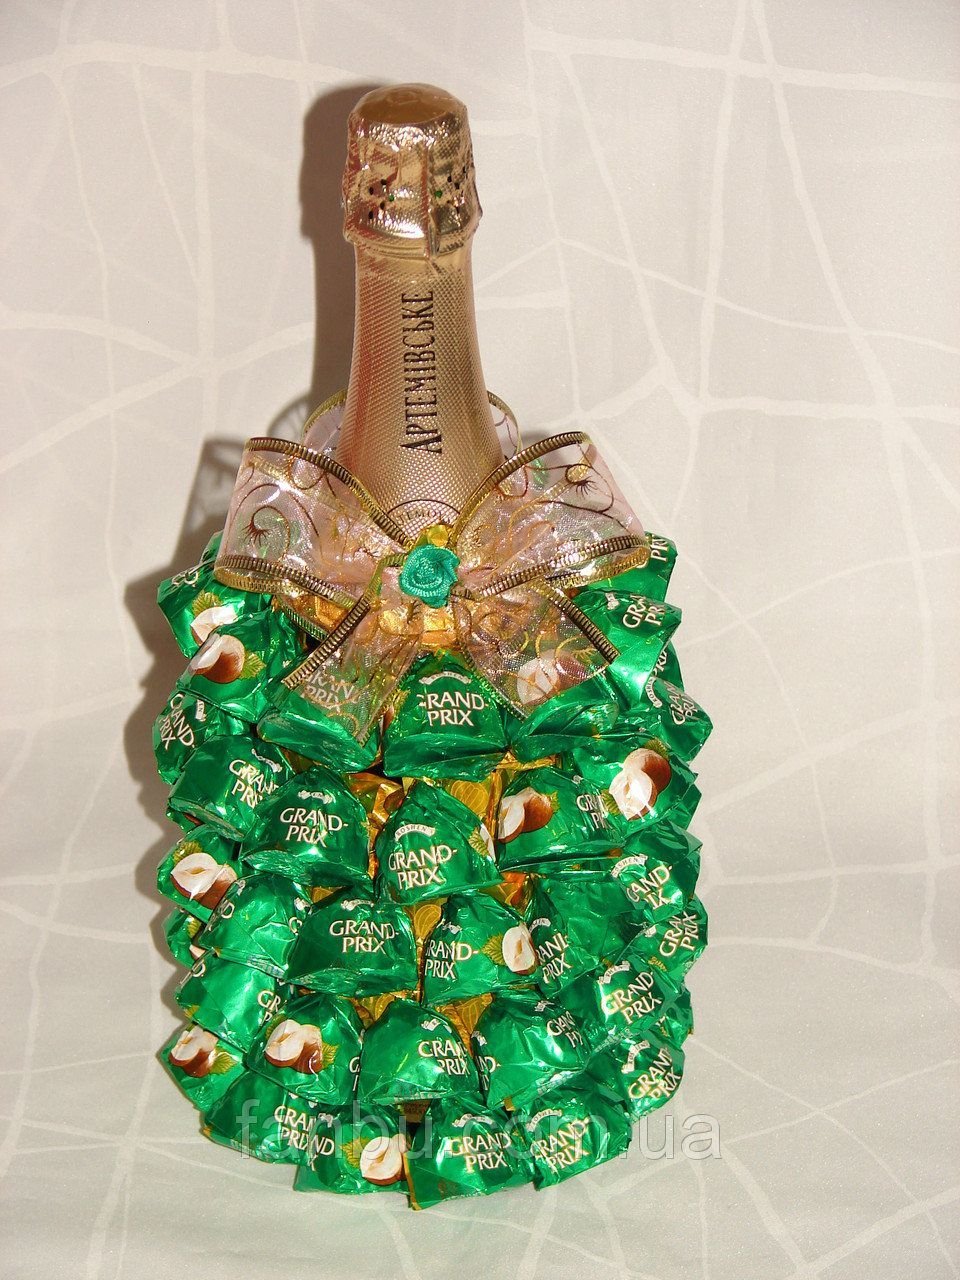 Как оригинально украсить бутылку шампанского на Новый год